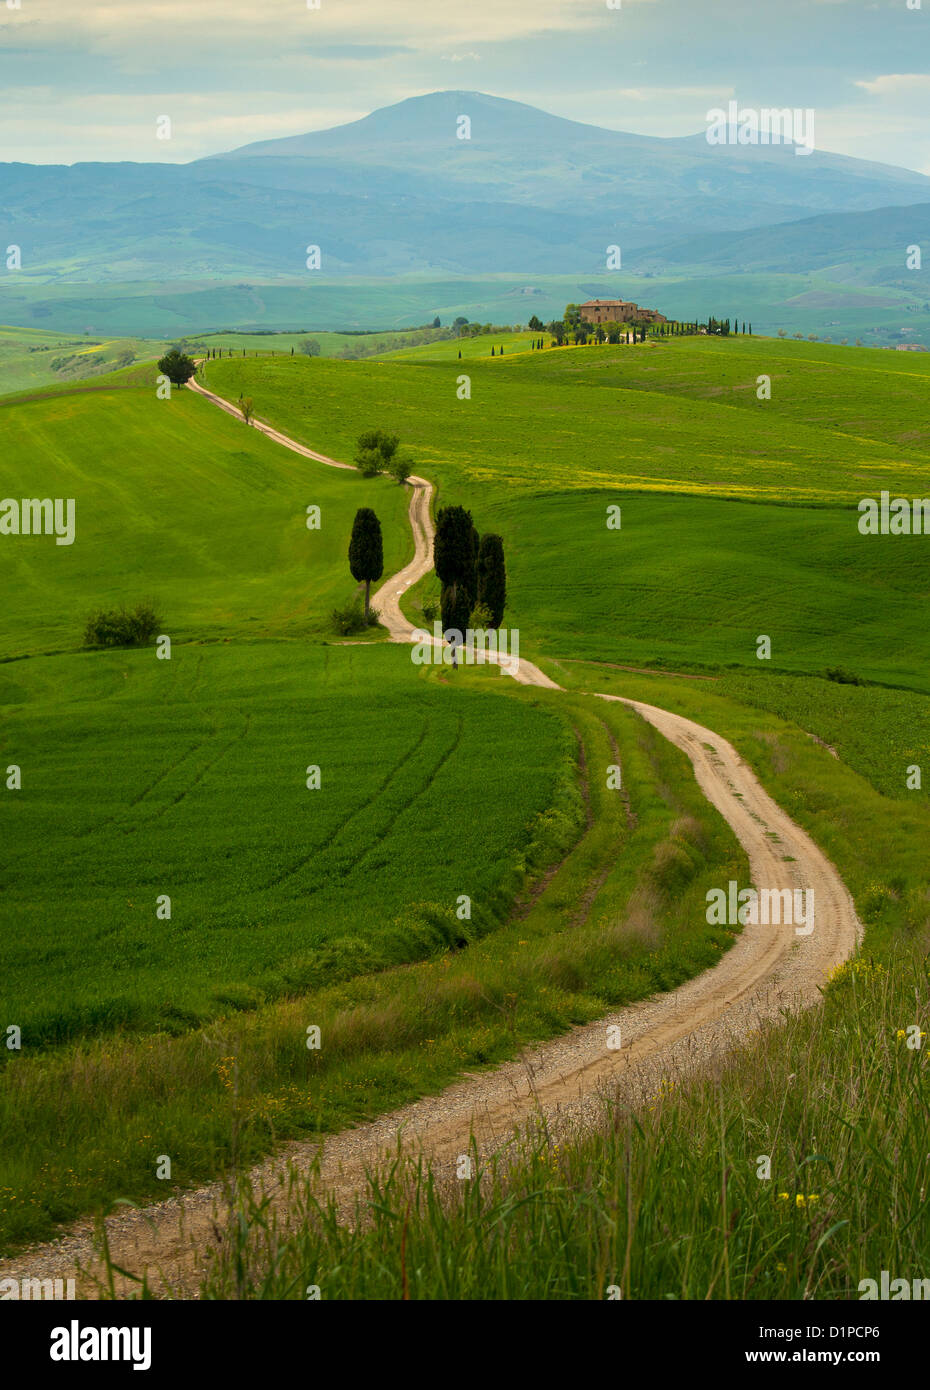 Route de campagne sinueuse en Toscane, avec ferme à distance, Pienza Italie Banque D'Images